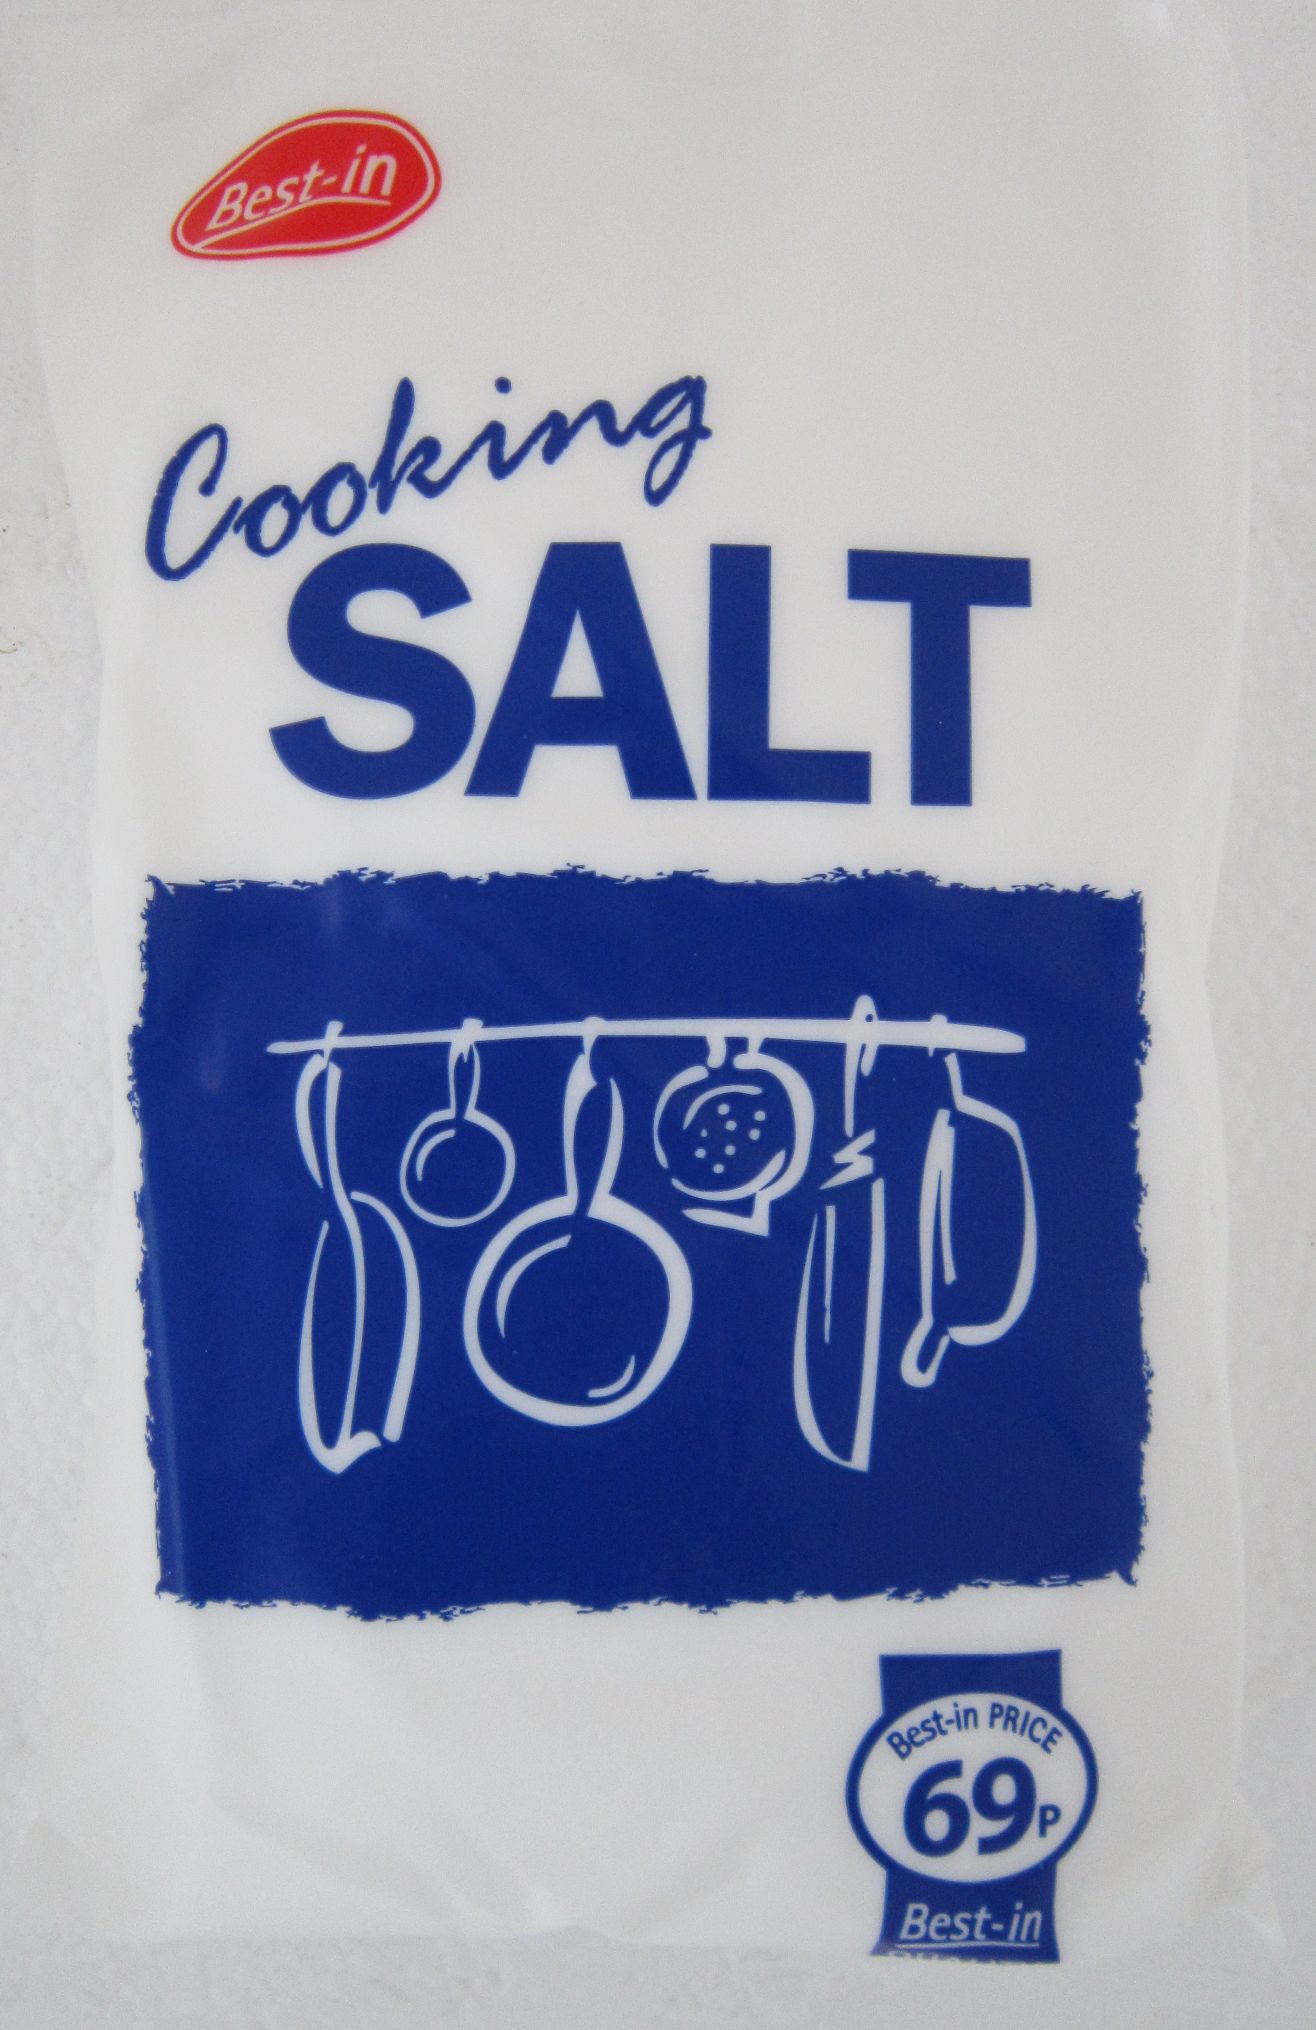 Best-in Cooking Salt Image